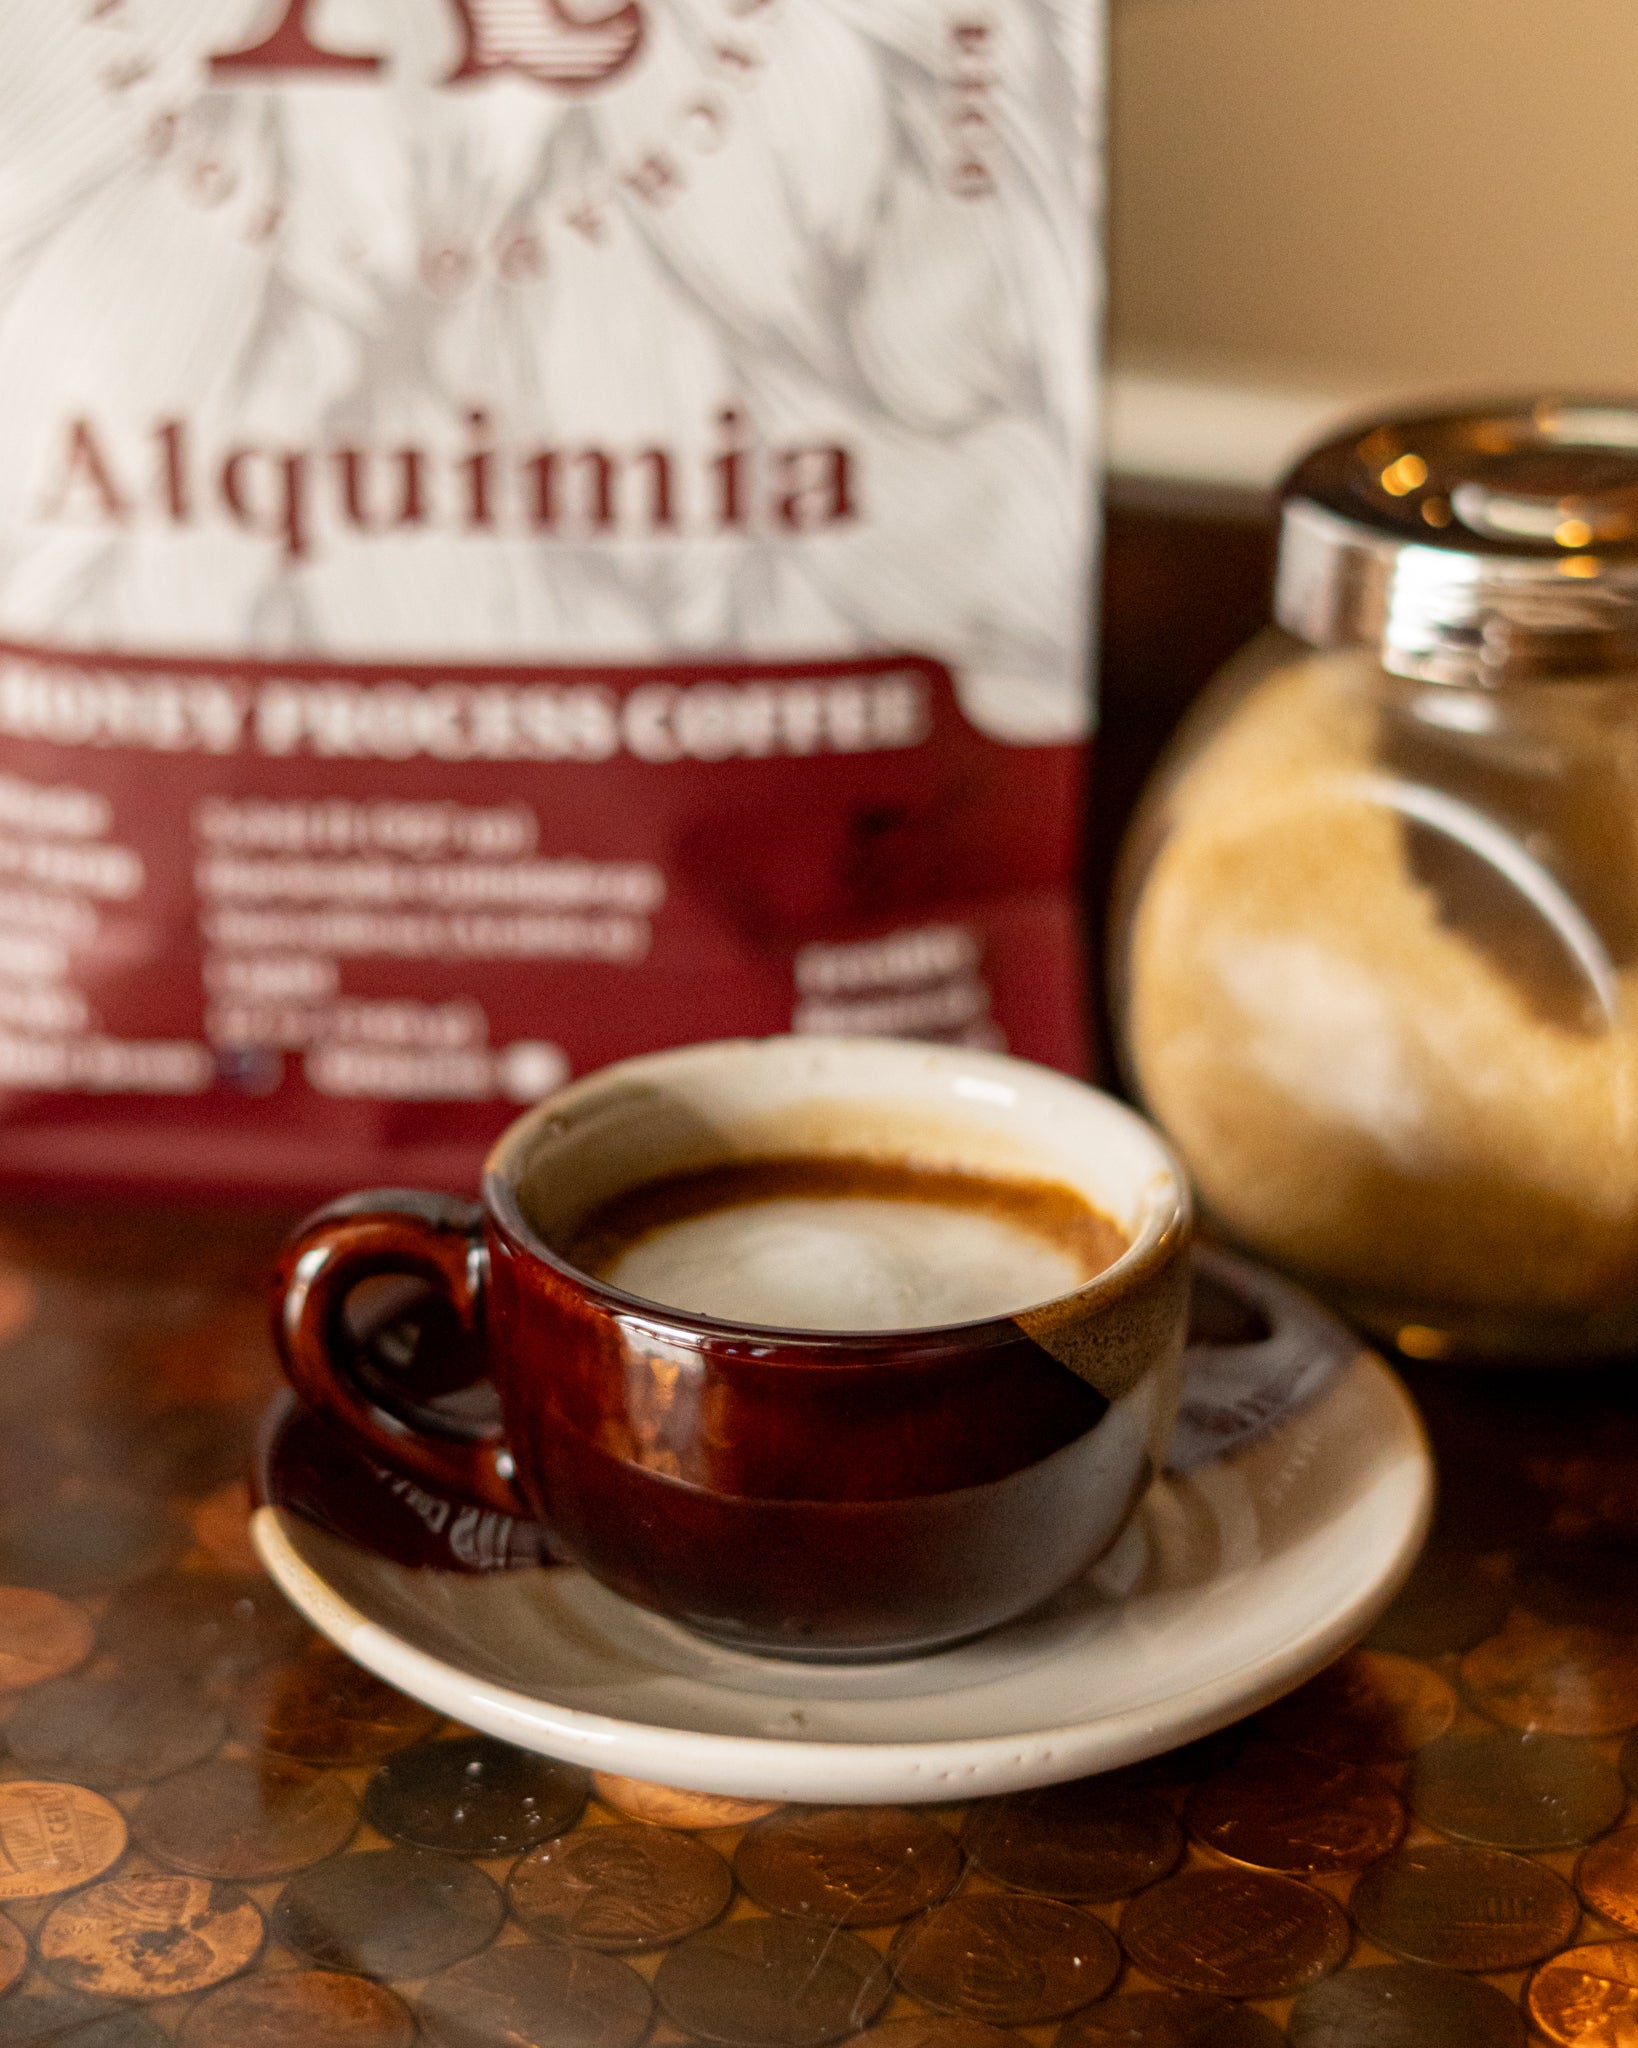 Alquimia Honey Process Coffee